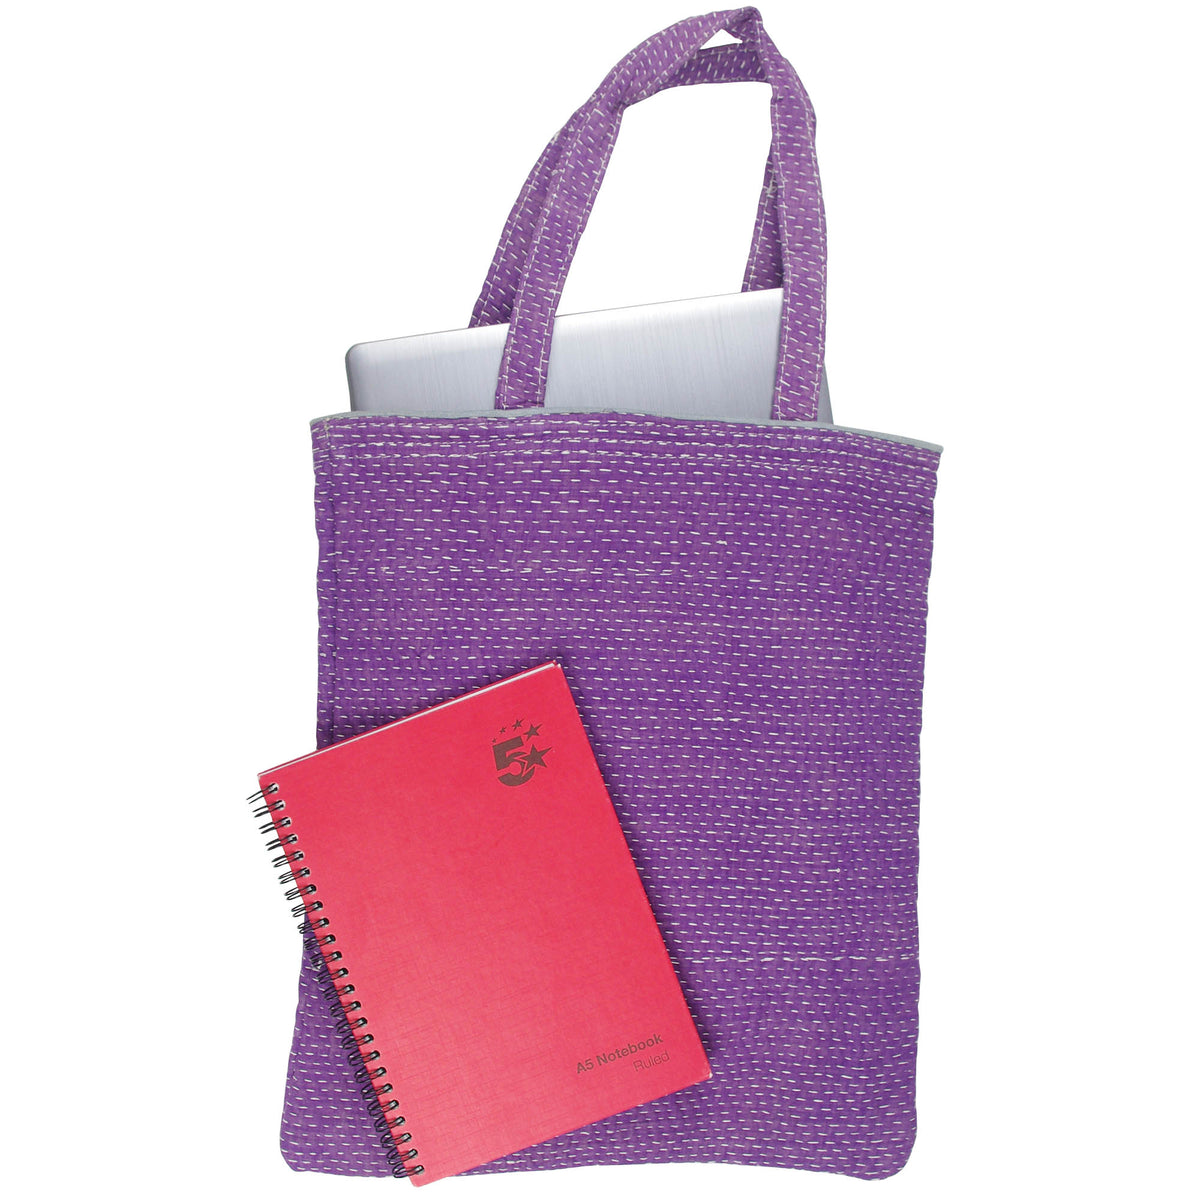 Vintage Fine Kantha Stitched Cotton Tote Bag- Plain Purple